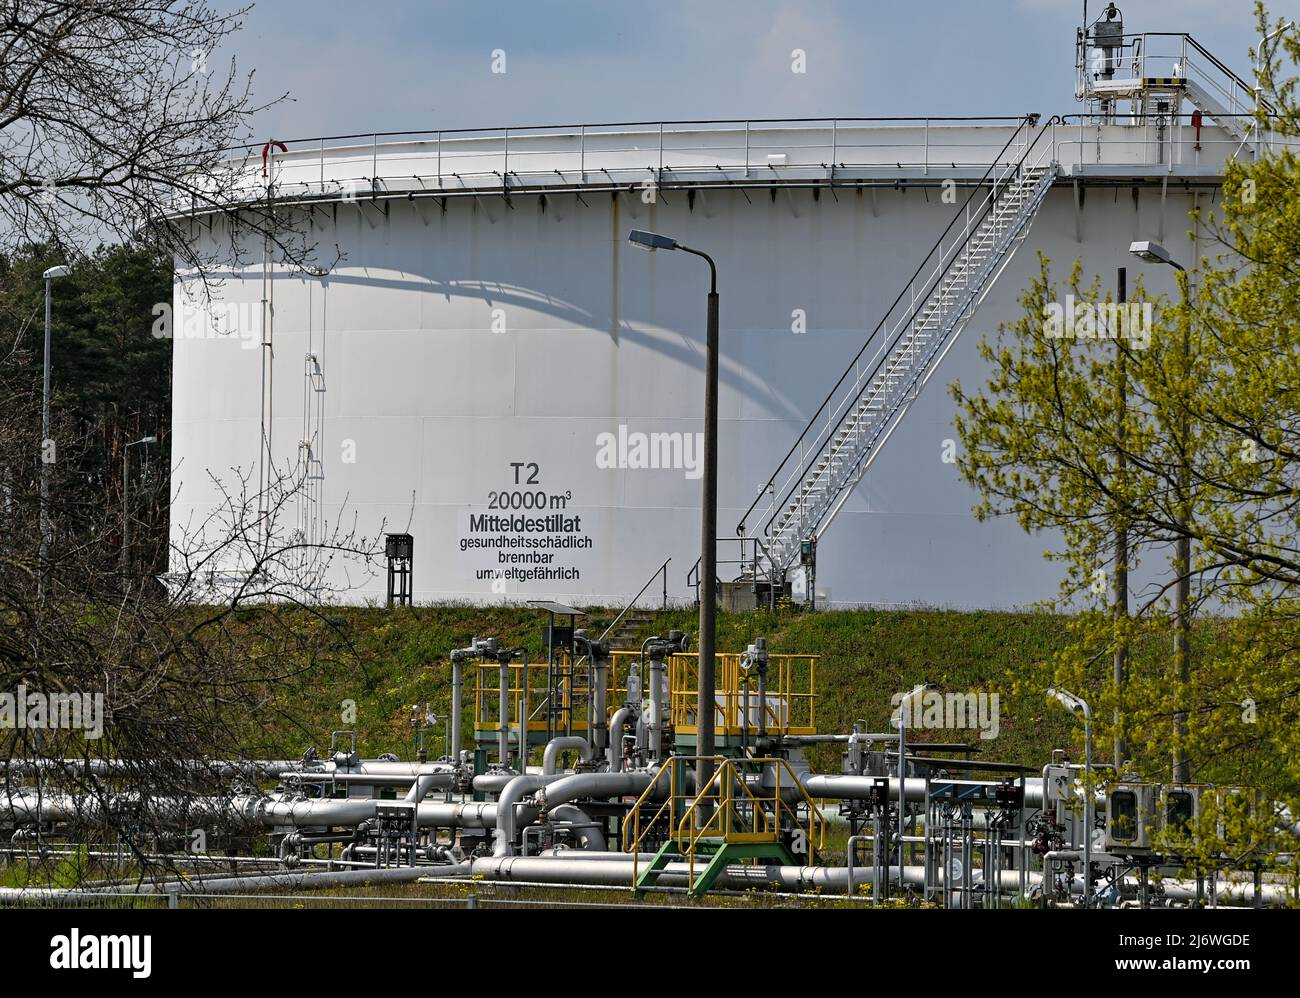 04 mai 2022, Brandebourg, Seefeld: Immense stand de conteneurs-citernes sur le site de PCK et d'elf Tanklagerbetrieb Seefeld GbR. Le pétrole brut de Russie arrive à la raffinerie de pétrole PCK à Schwedt via le pipeline « Friendship ». L'année dernière, le groupe énergétique russe Rosneft a pris en charge une grande partie de la raffinerie de pétrole PCK à Schwedt. Rosneft est le plus grand producteur de pétrole de Russie. Selon ses propres informations, la raffinerie de la région d'Uckermark traite chaque année 12 millions de tonnes de pétrole brut, ce qui en fait l'un des plus grands sites de transformation d'Allemagne. Photo: Patrick Pleul/dpa Banque D'Images